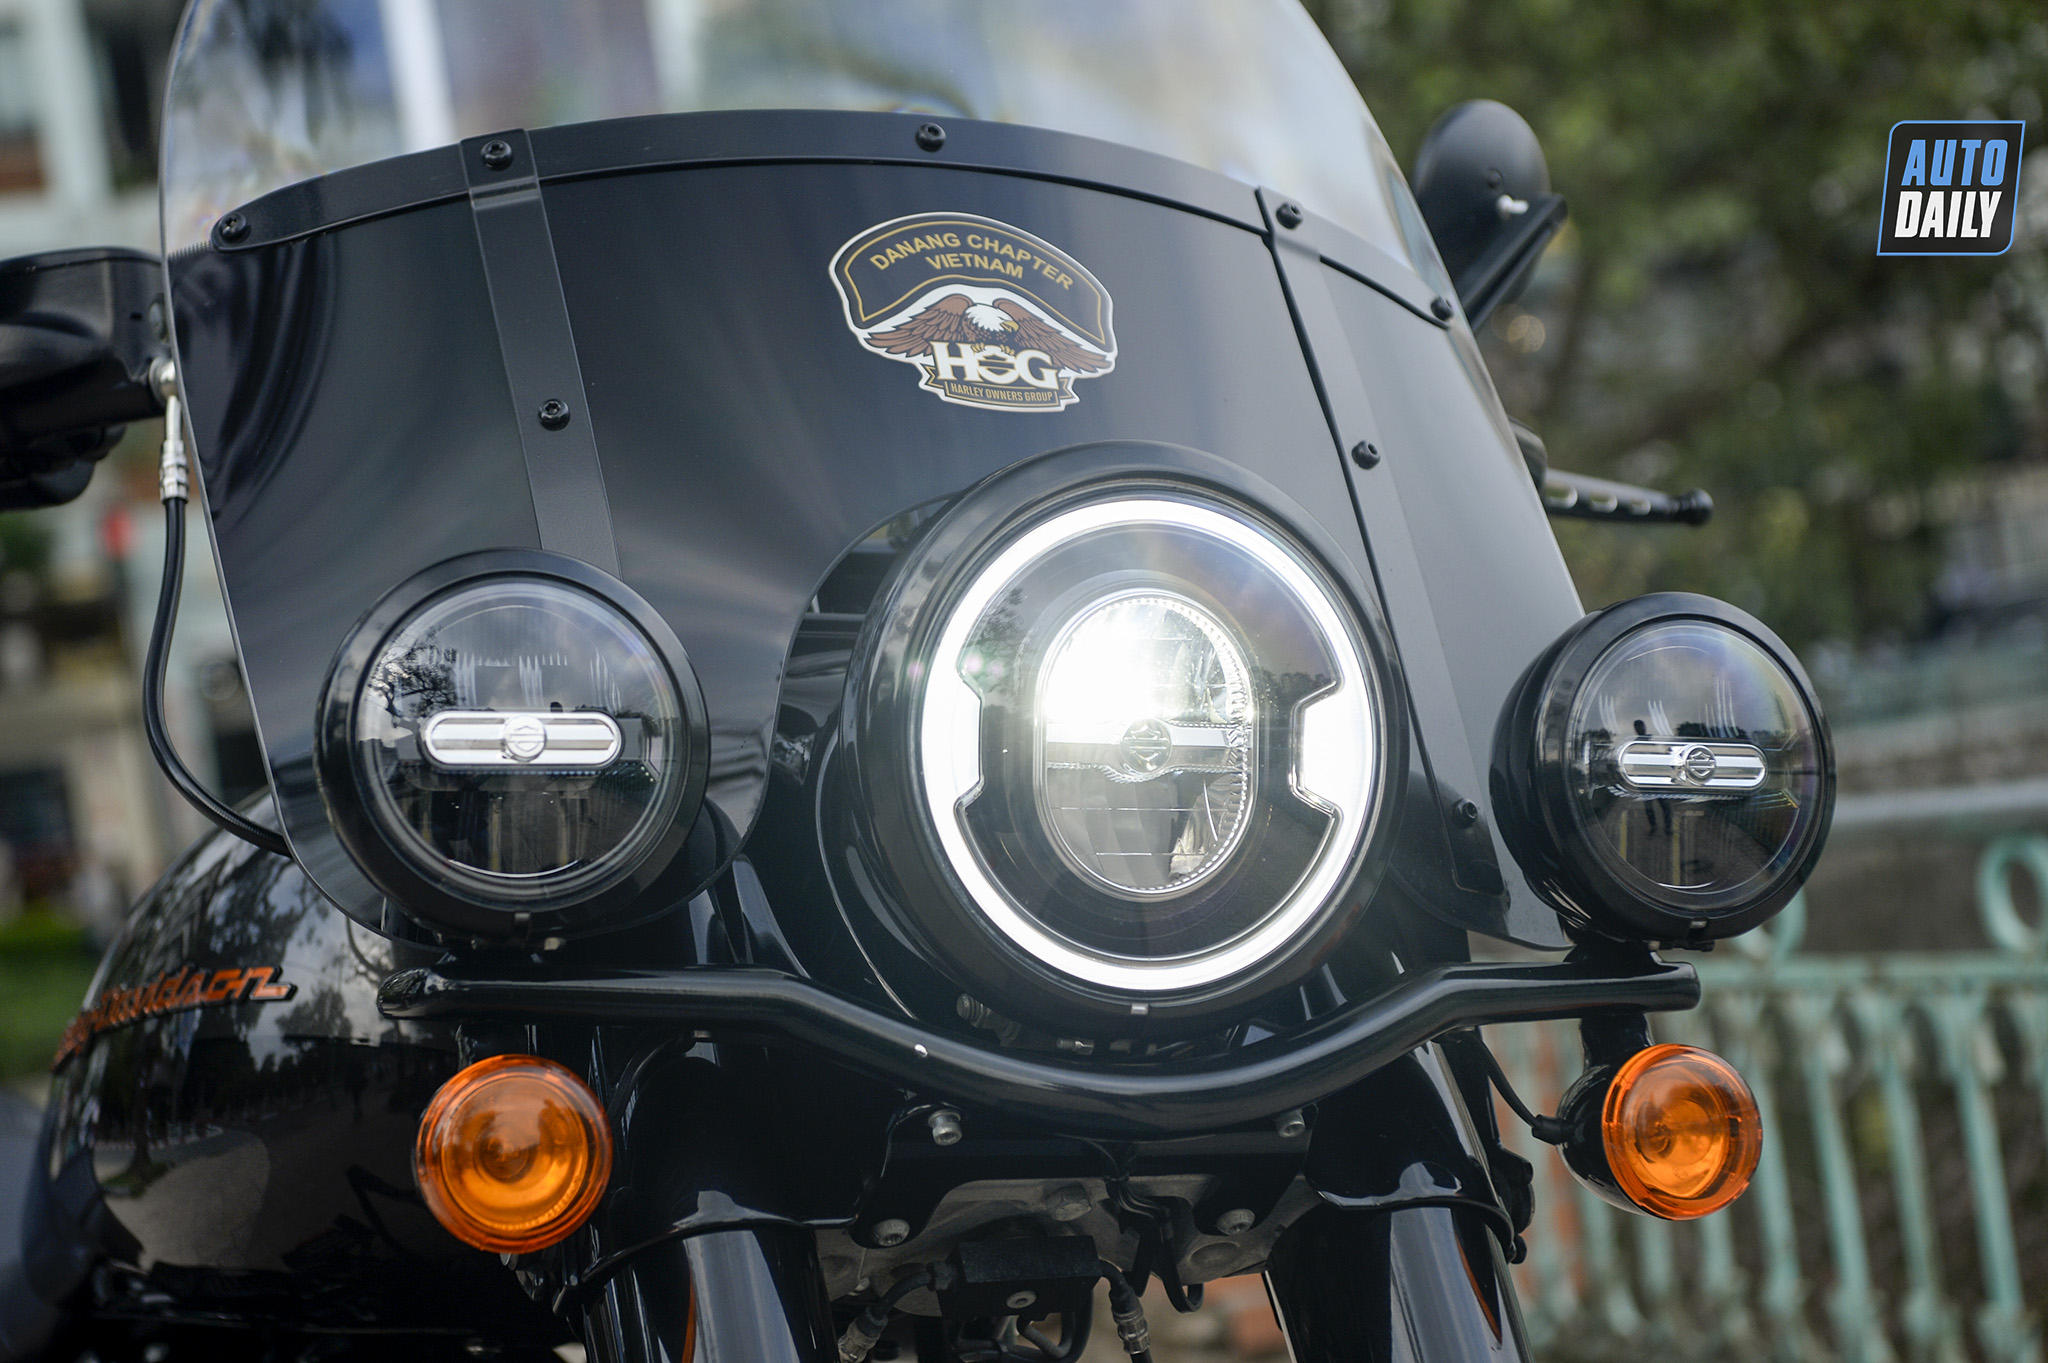 Diễn viên Hồng Đăng tậu siêu xe Harley Davidson Heritage giá hơn 800 triệu đồng